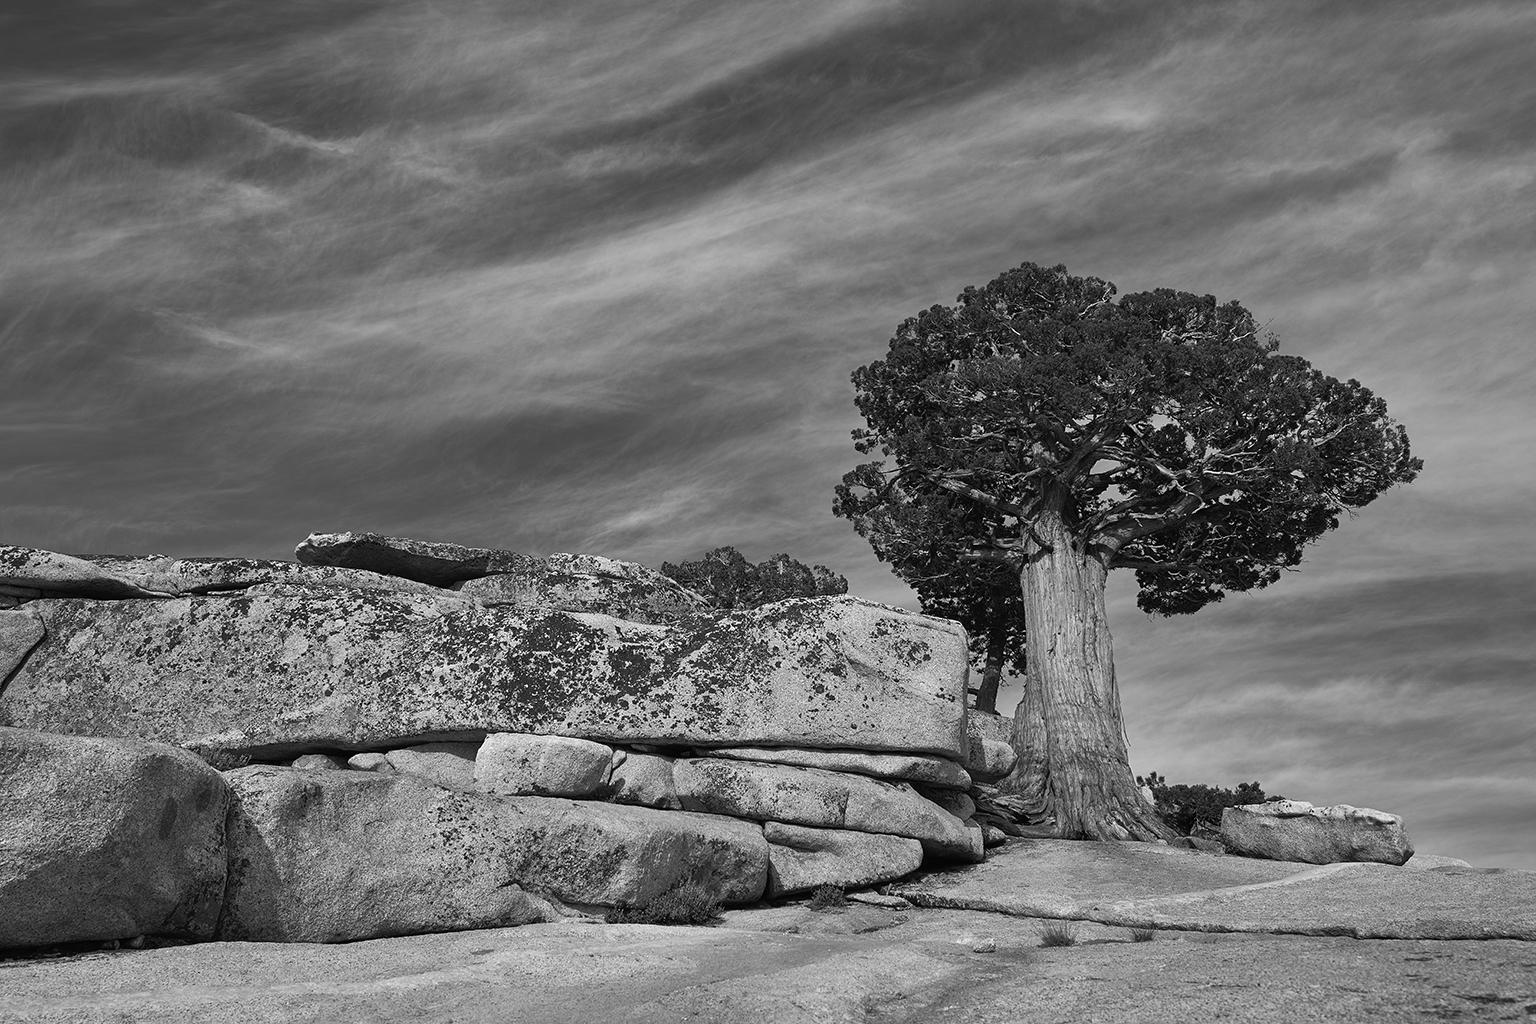 Étude d'arbre IV - photographie grand format b/w d'un arbre ancien solitaire dans un paysage